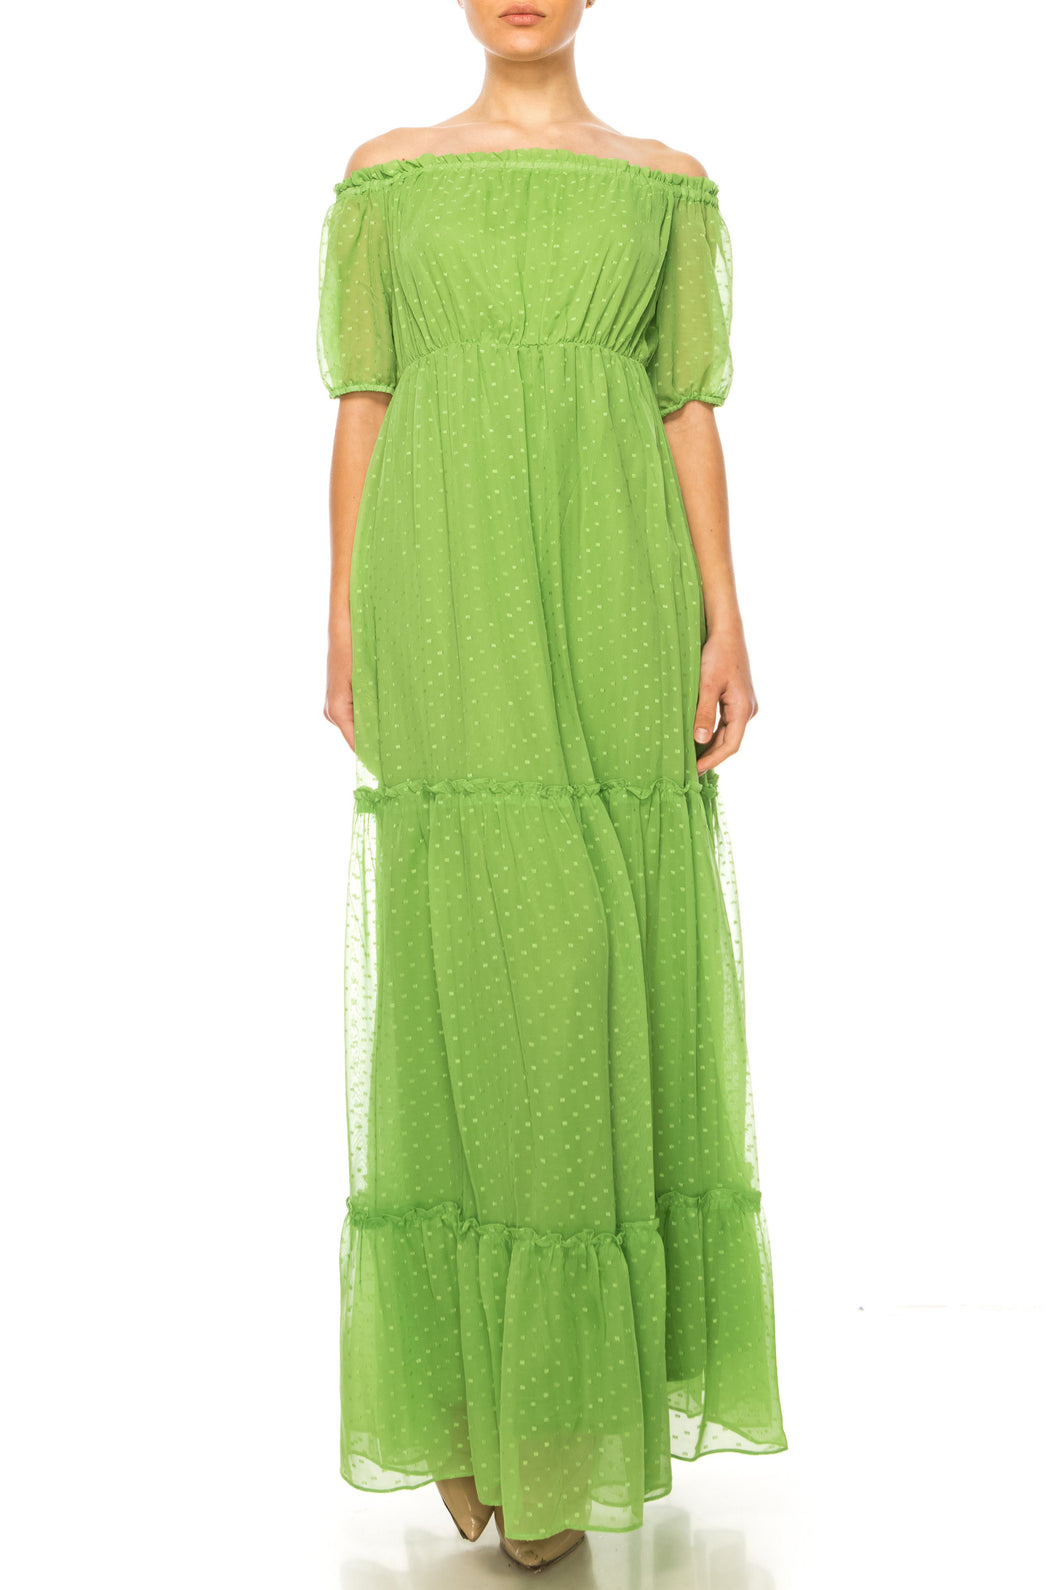 Maison Tara Green Grass Tiered Maxi Day Dress, Women's Spring Summer Apparel Casual Attire